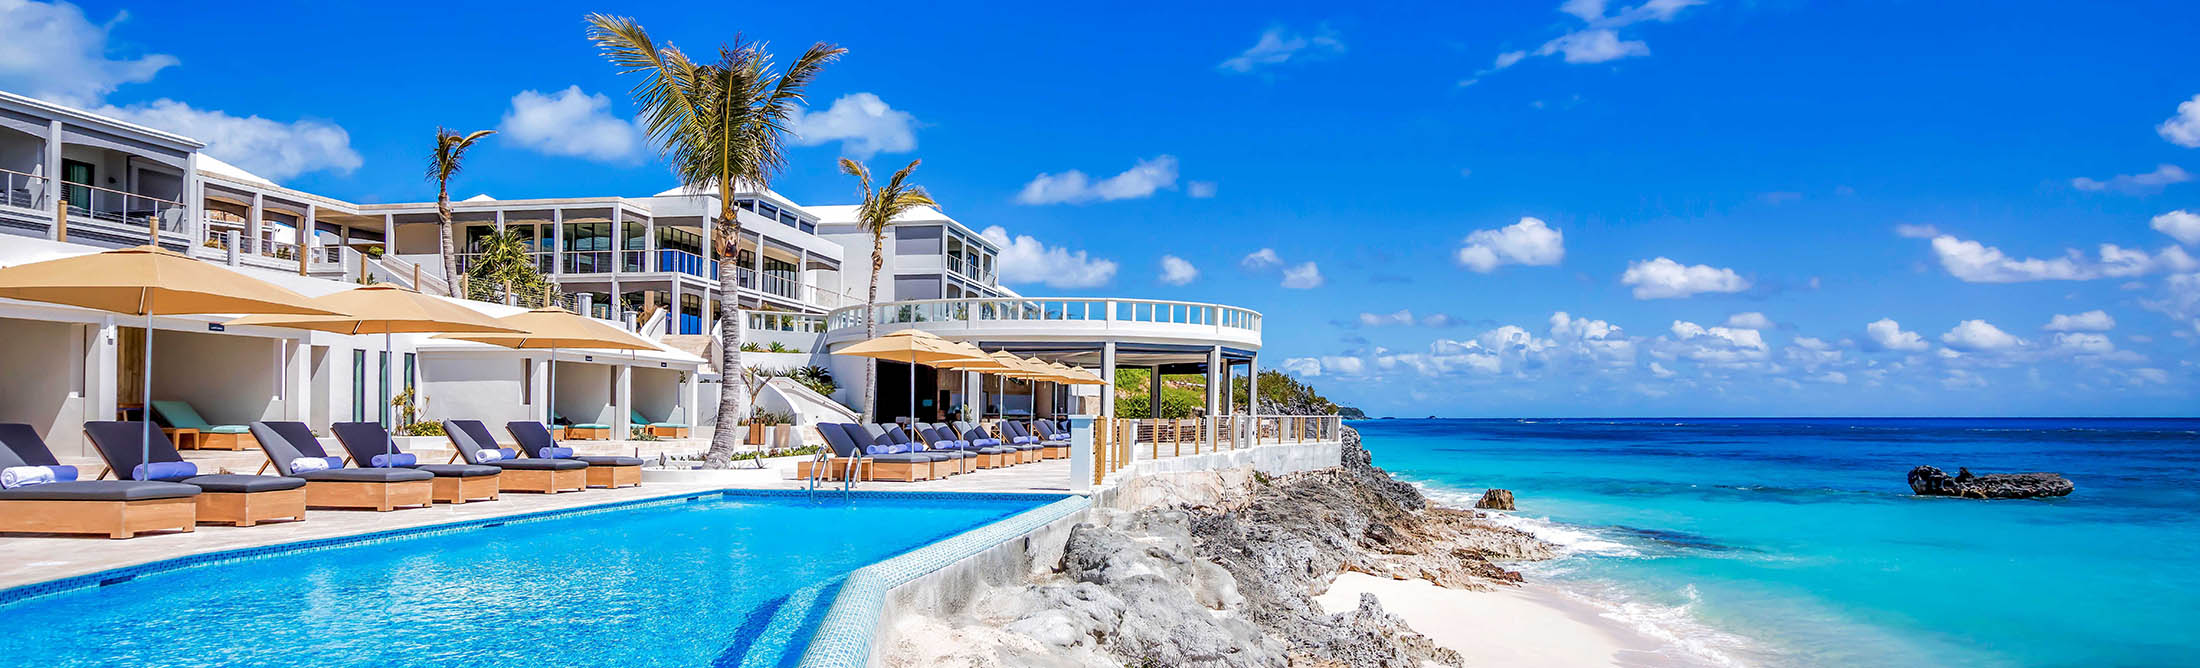 New Hotels, Restaurants in Bermuda, the Hamptons-Style Getaway